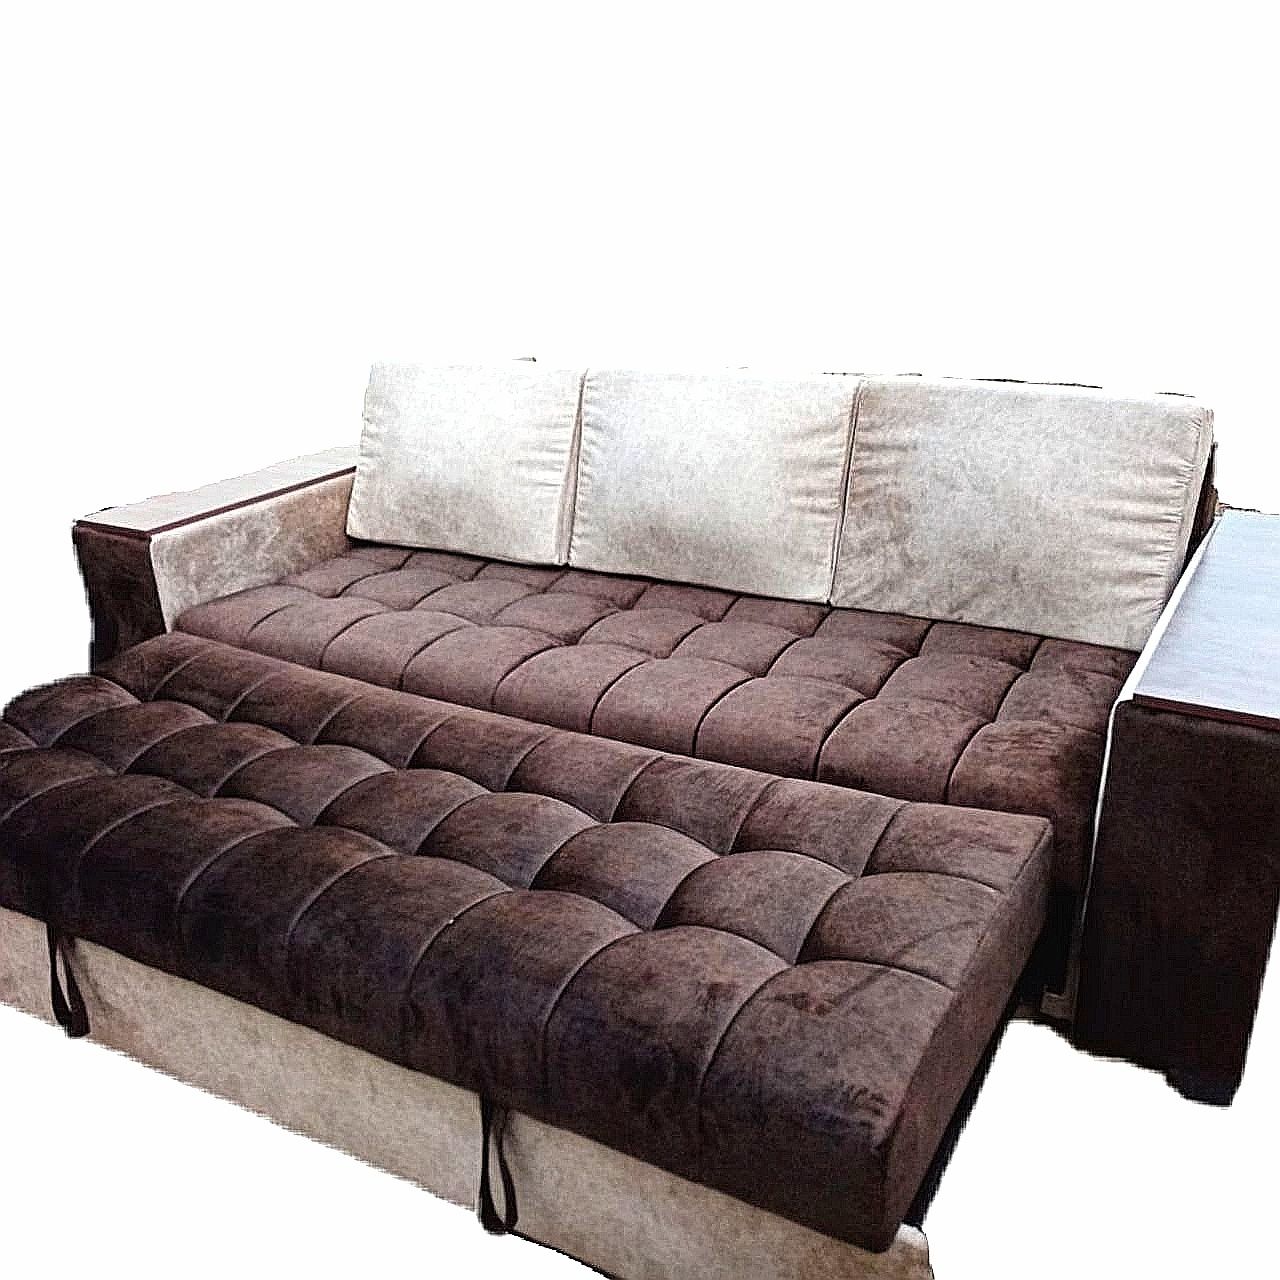 Раскладной диван от производителя.